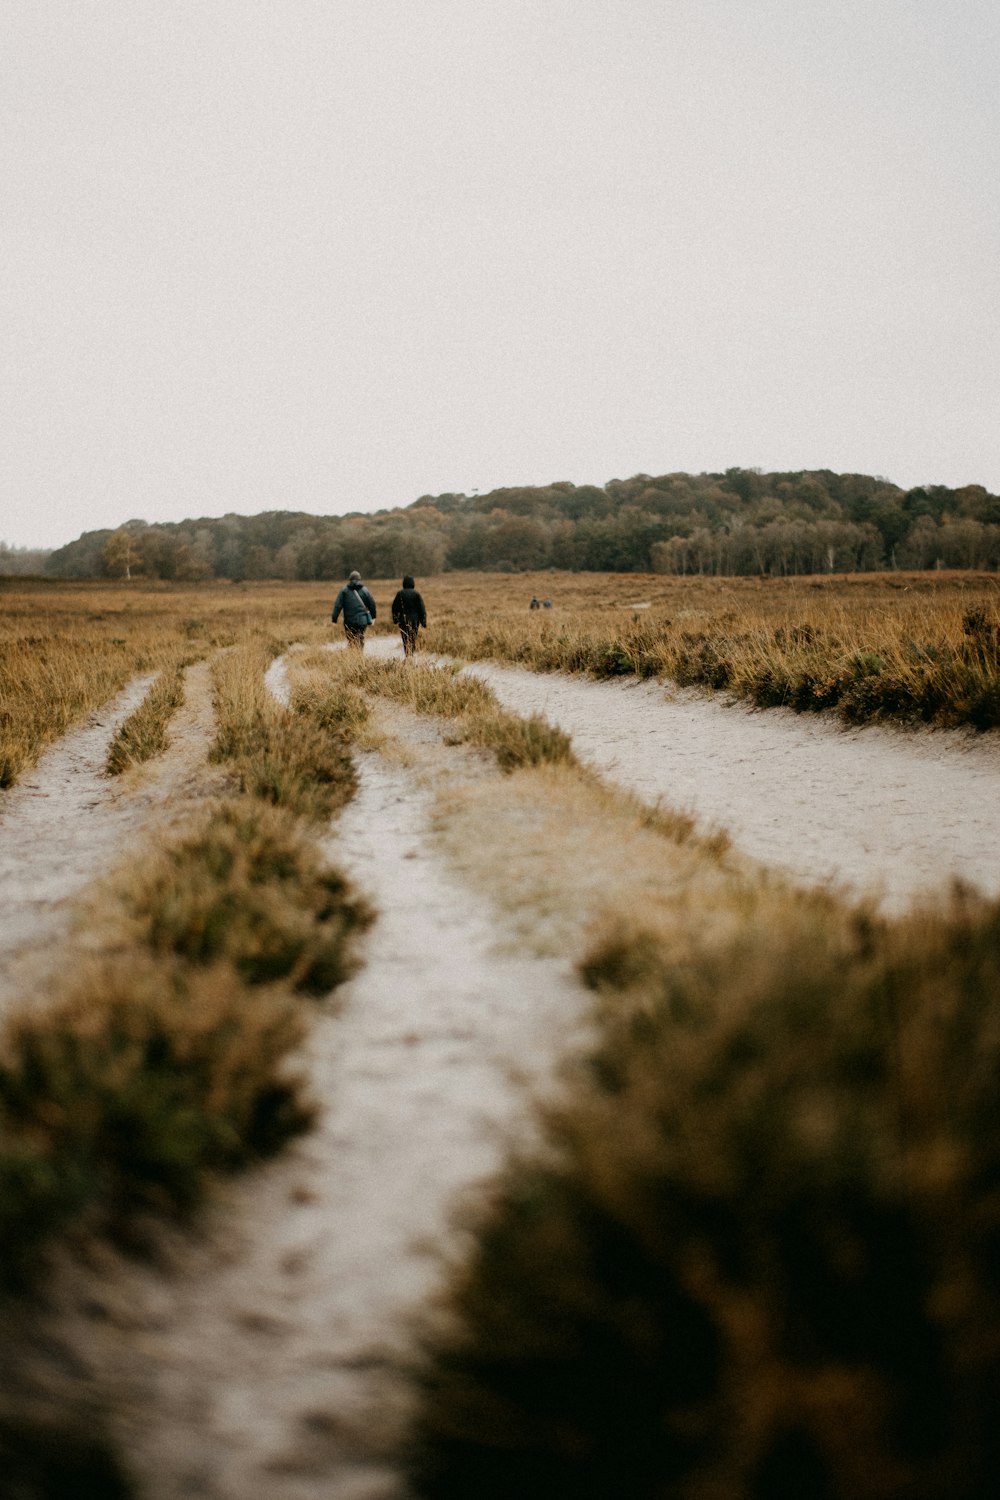 Un par de personas caminando por un camino de tierra